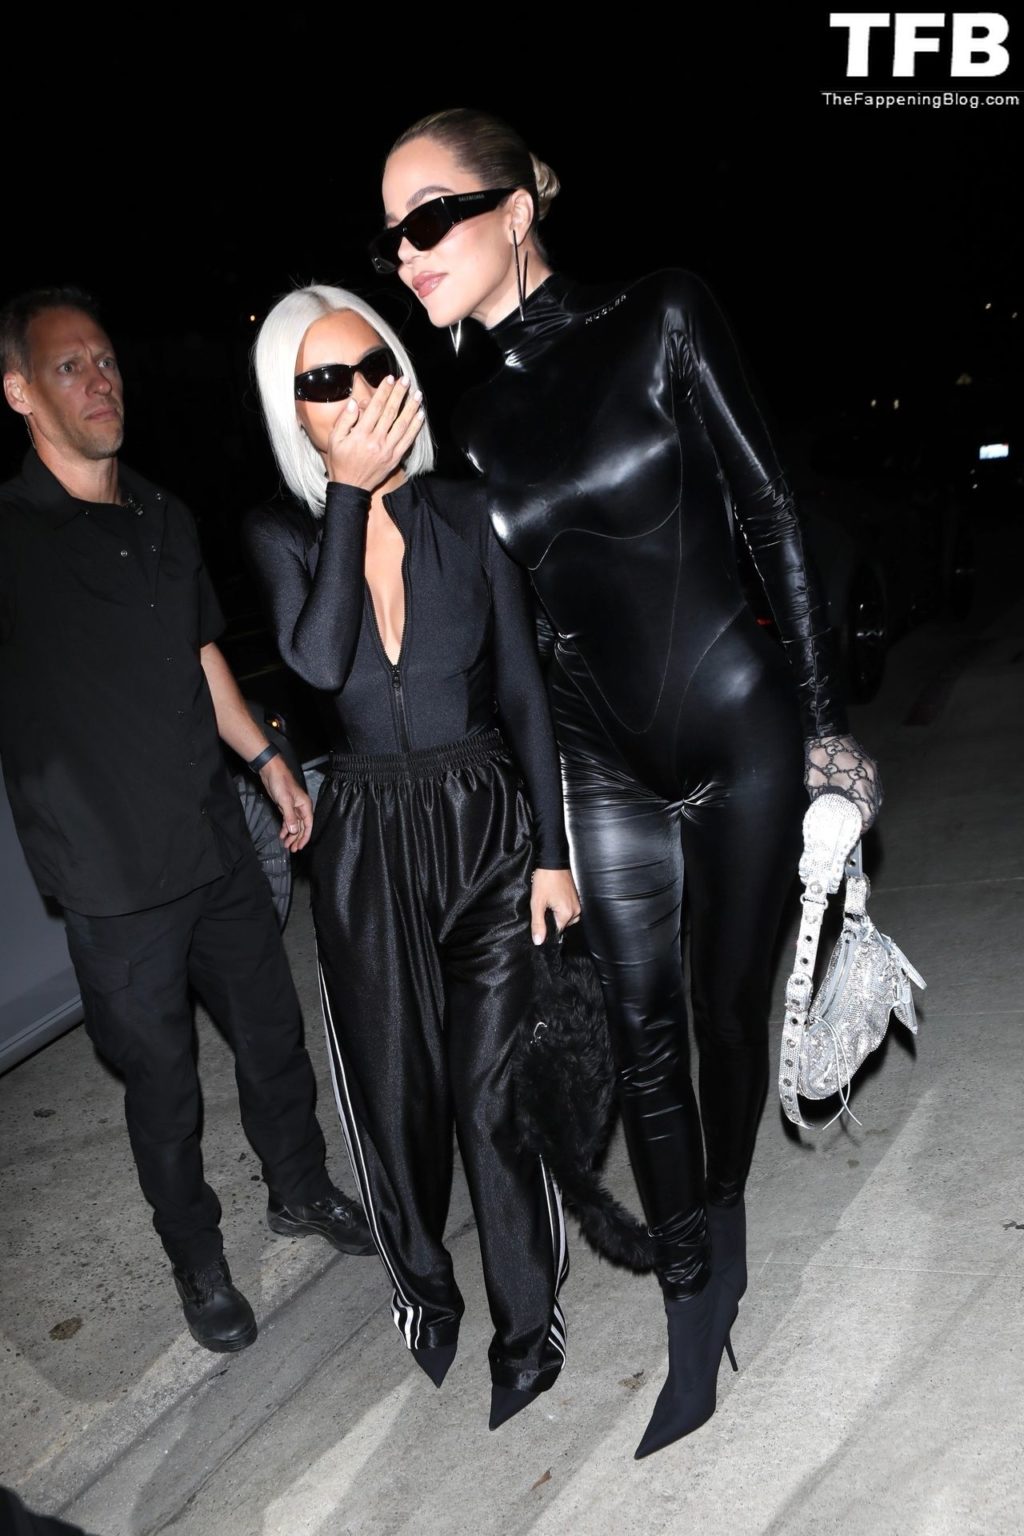 Kim Kardashian &amp; Khloe Kardashian Stun in Balenciaga/Gucci Fashion While Out to Dinner in Santa Monica (150 Photos)